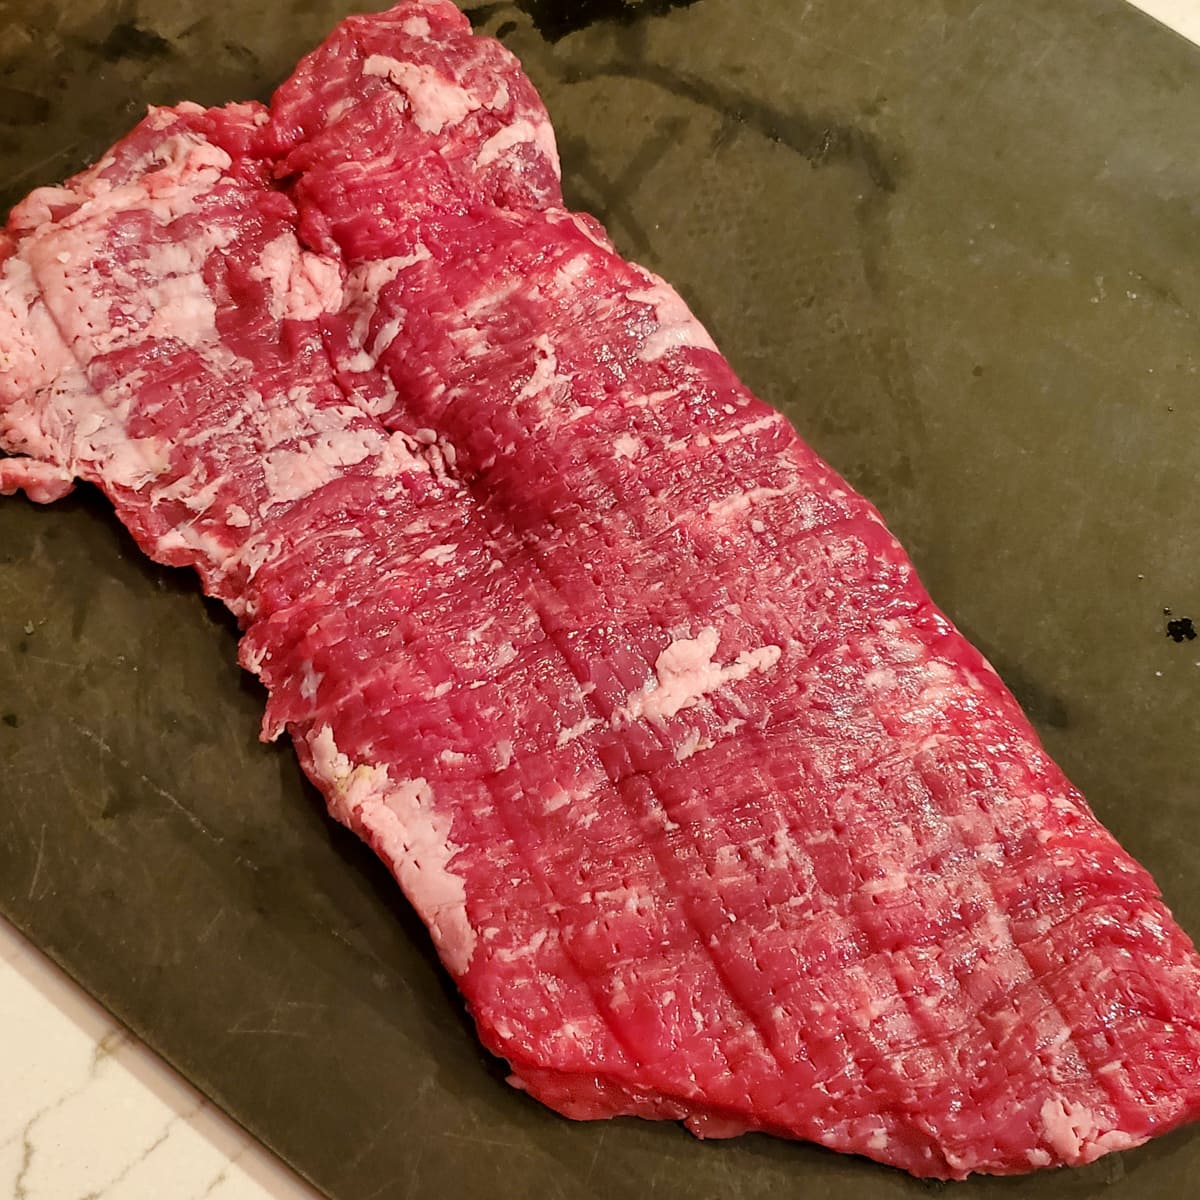 Blade tenderized skirt steak.